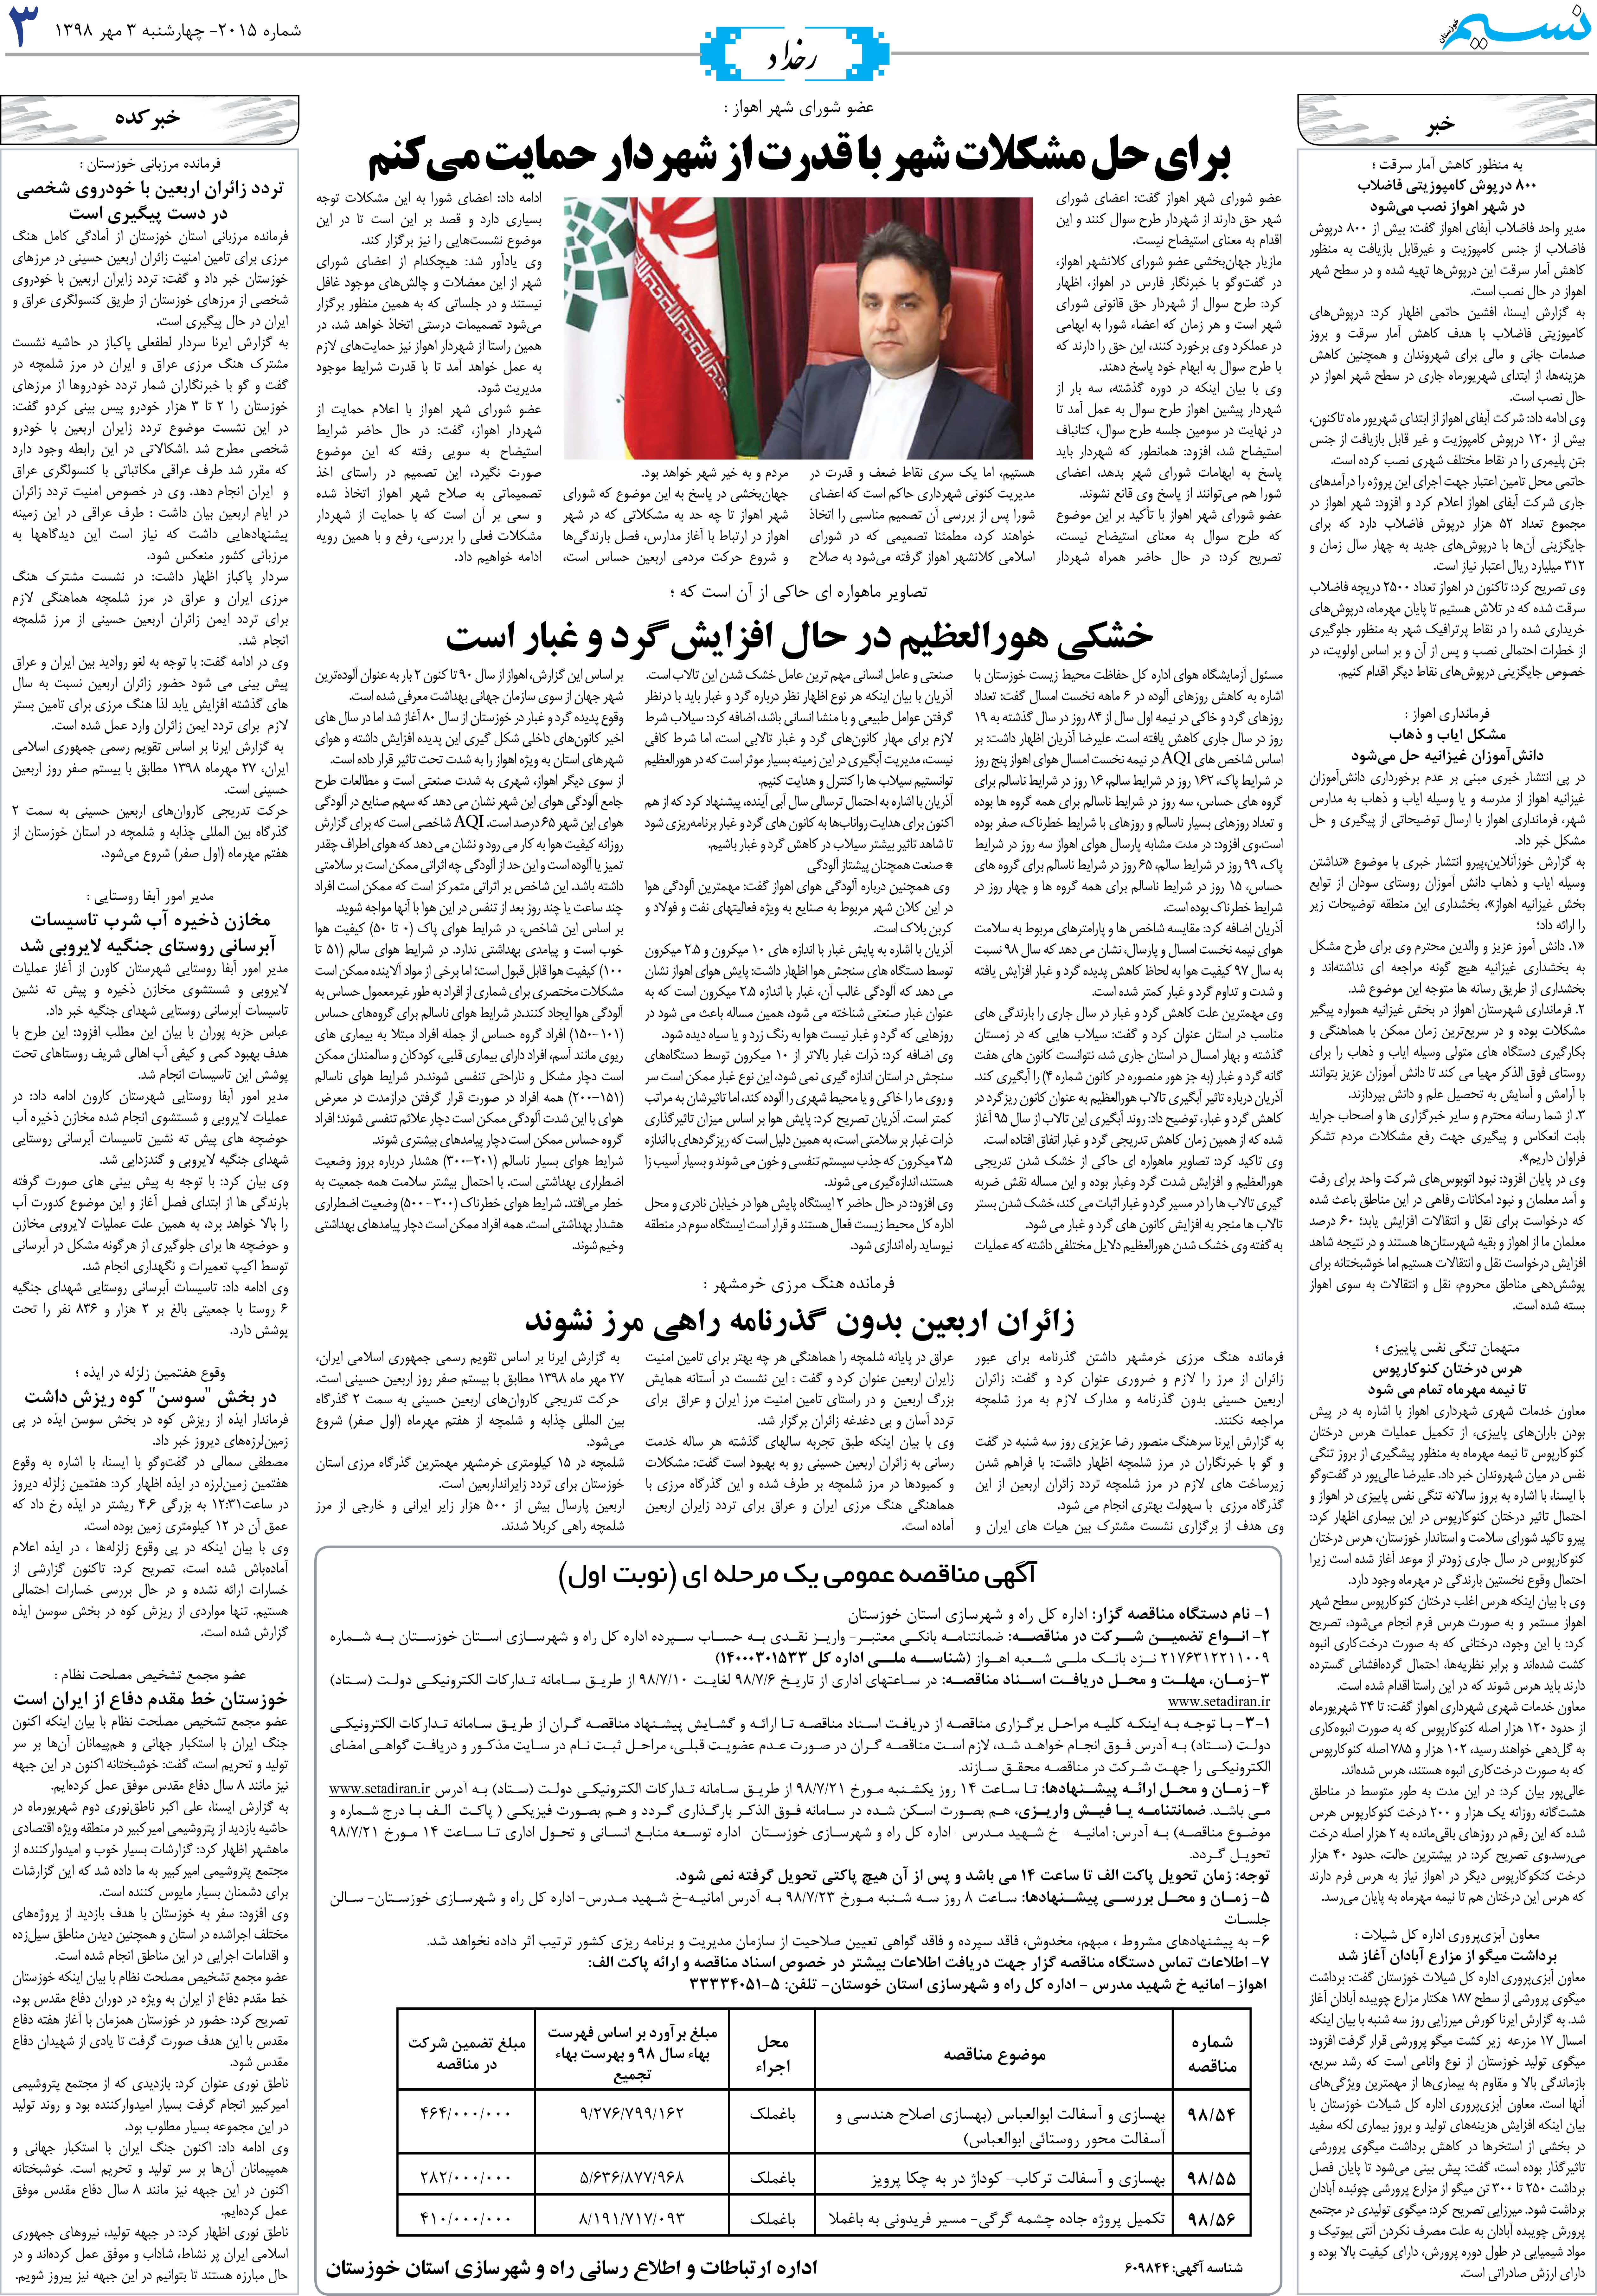 صفحه رخداد روزنامه نسیم شماره 2015